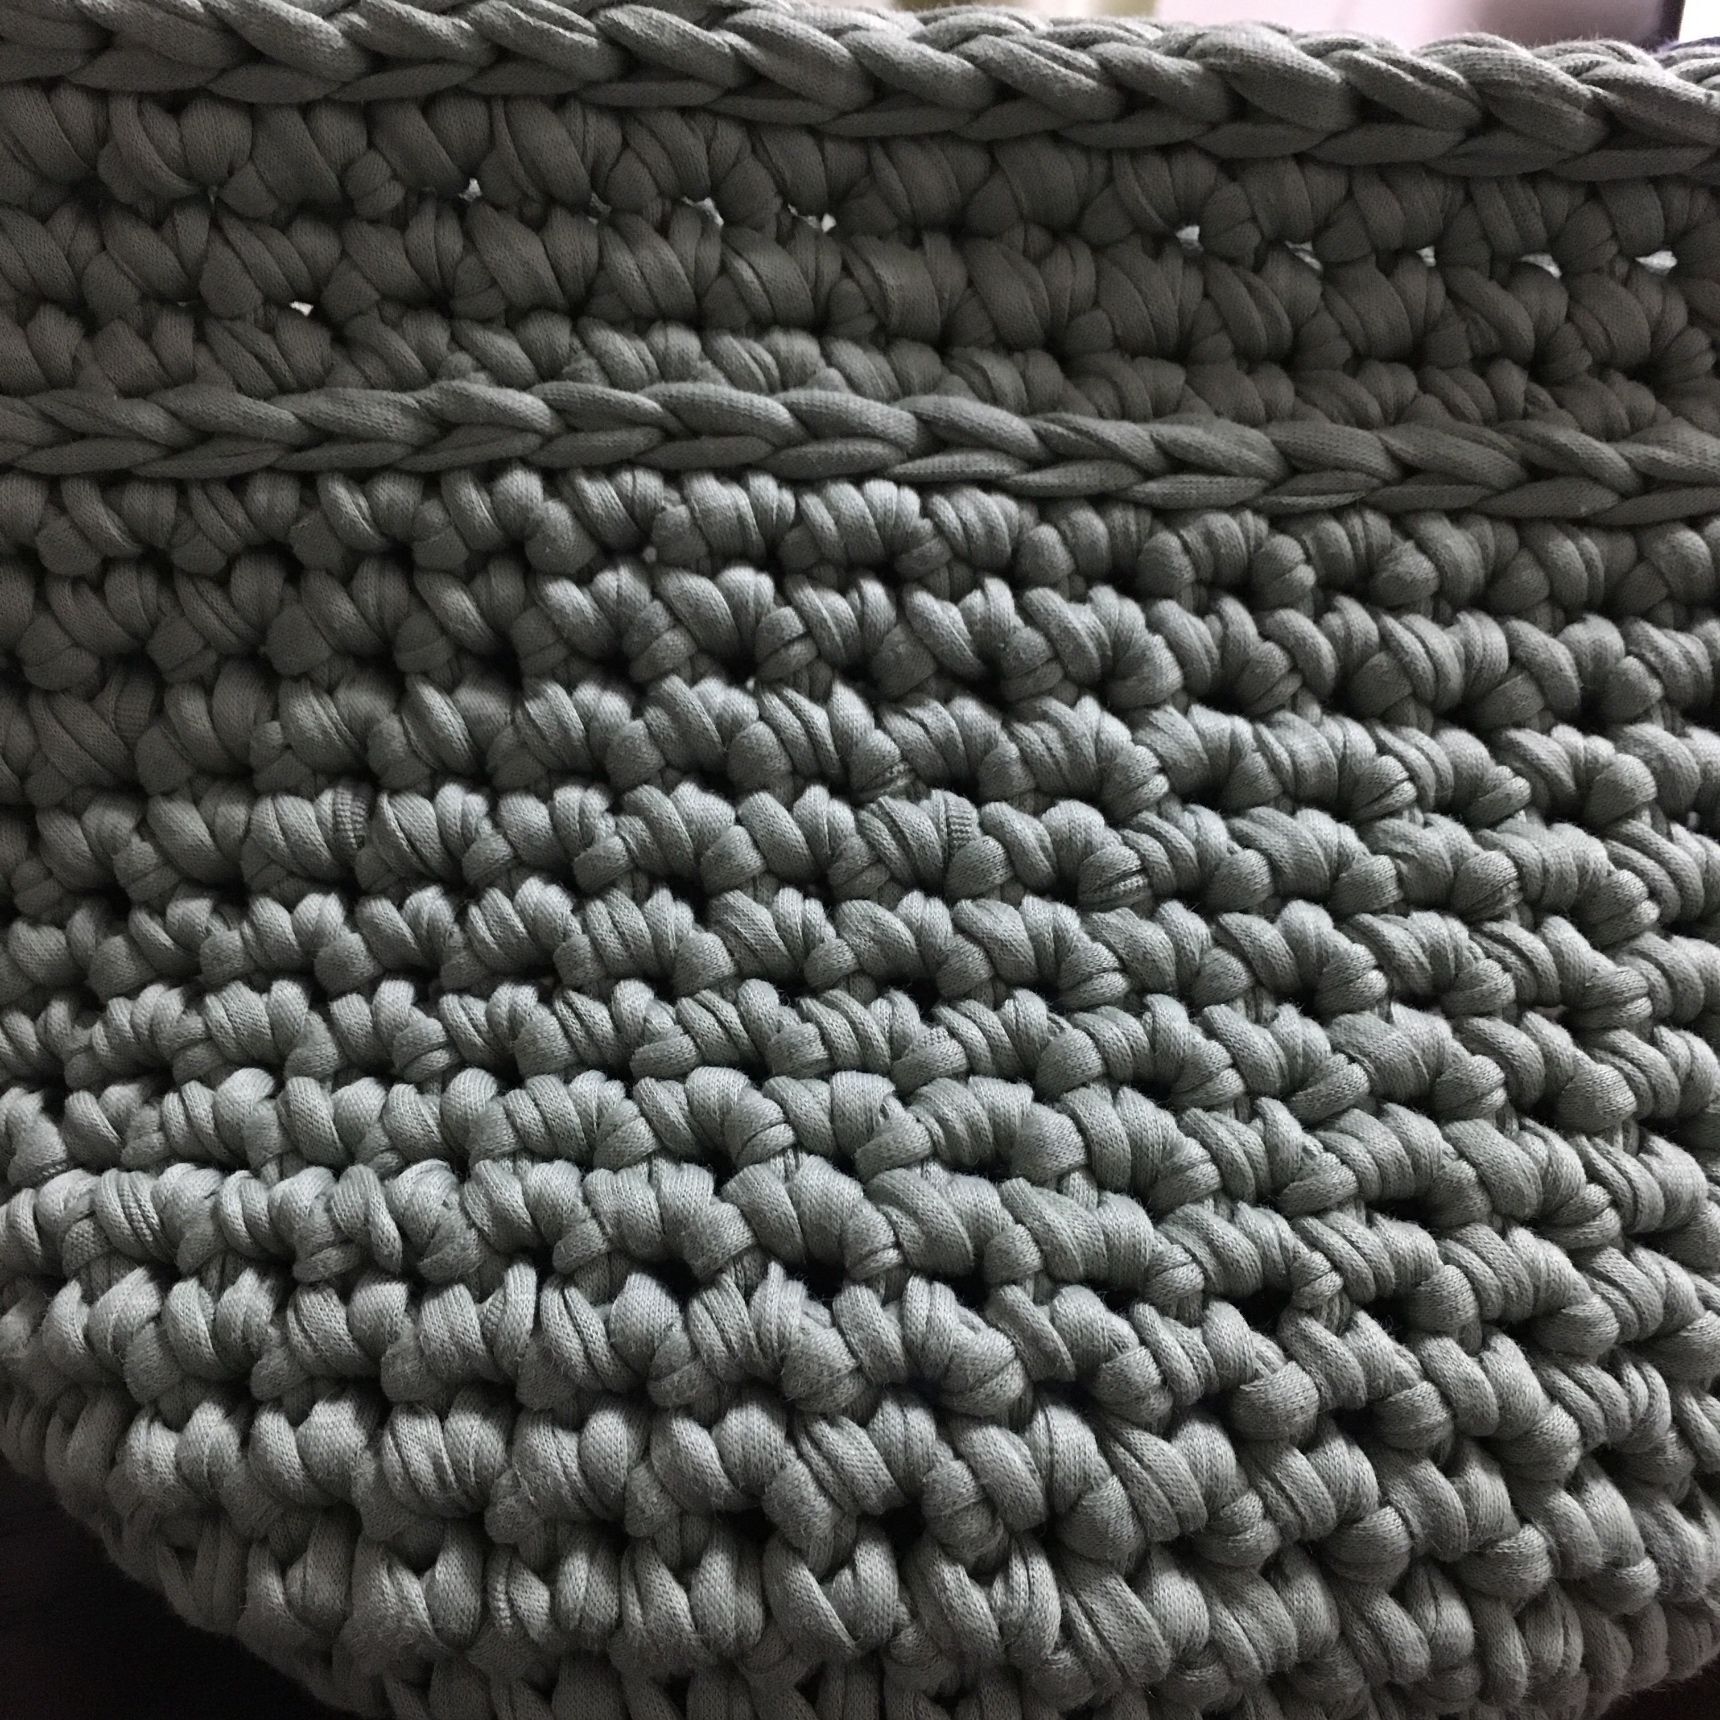 糸を本体の色に変え、編み上げる